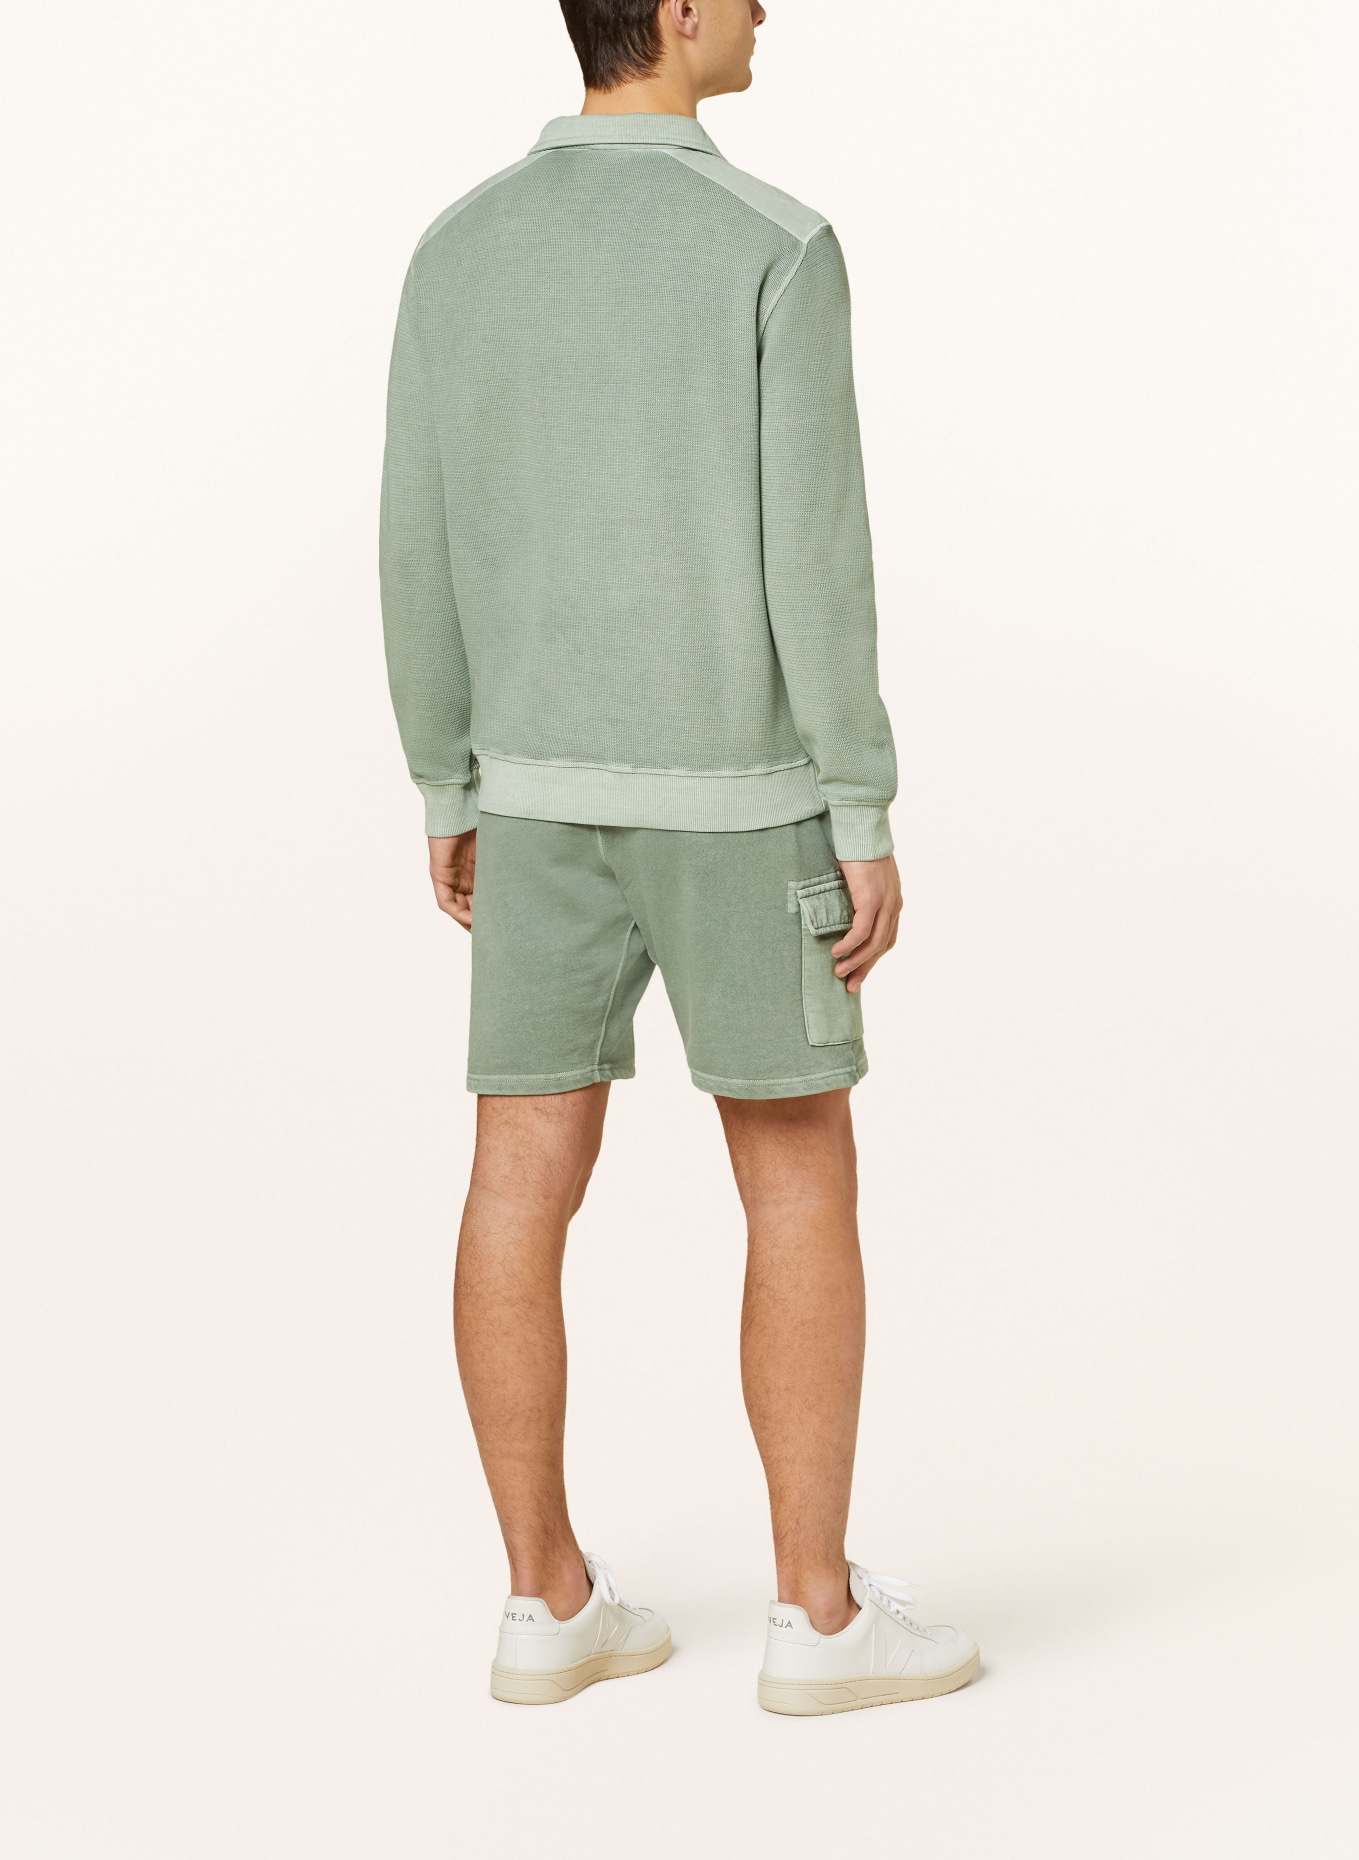 STROKESMAN'S Half-zip sweater in sweatshirt fabric, Color: GREEN (Image 3)